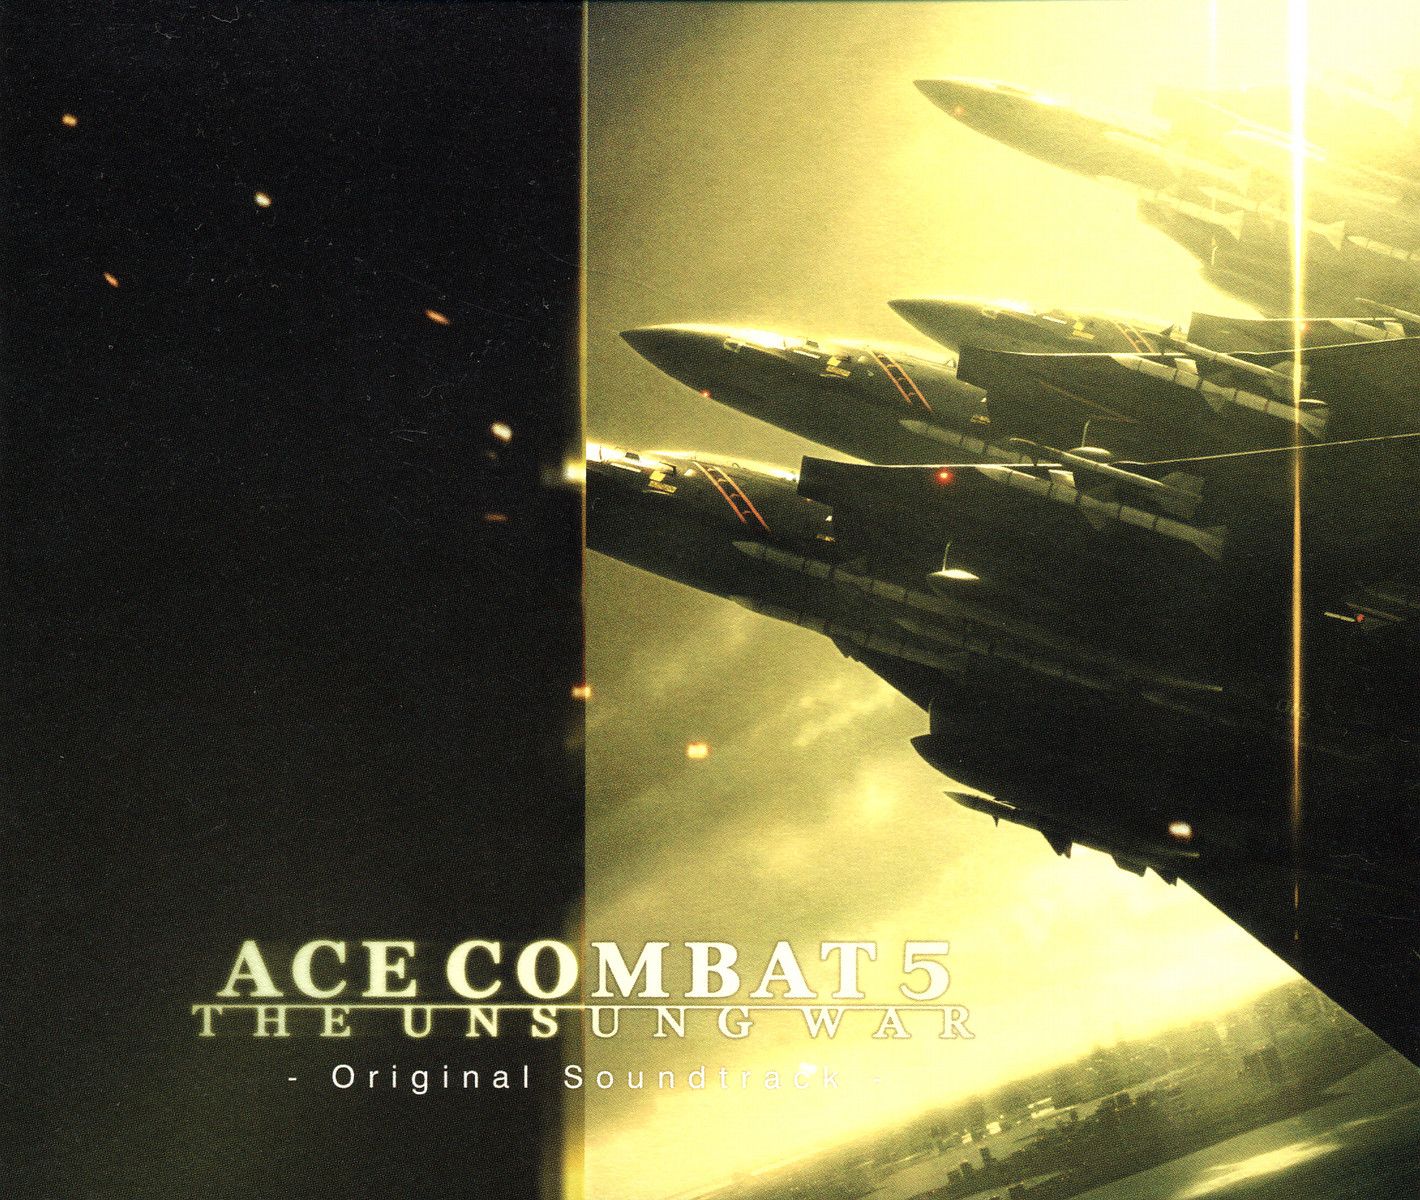 ace combat 4 soundtrack list